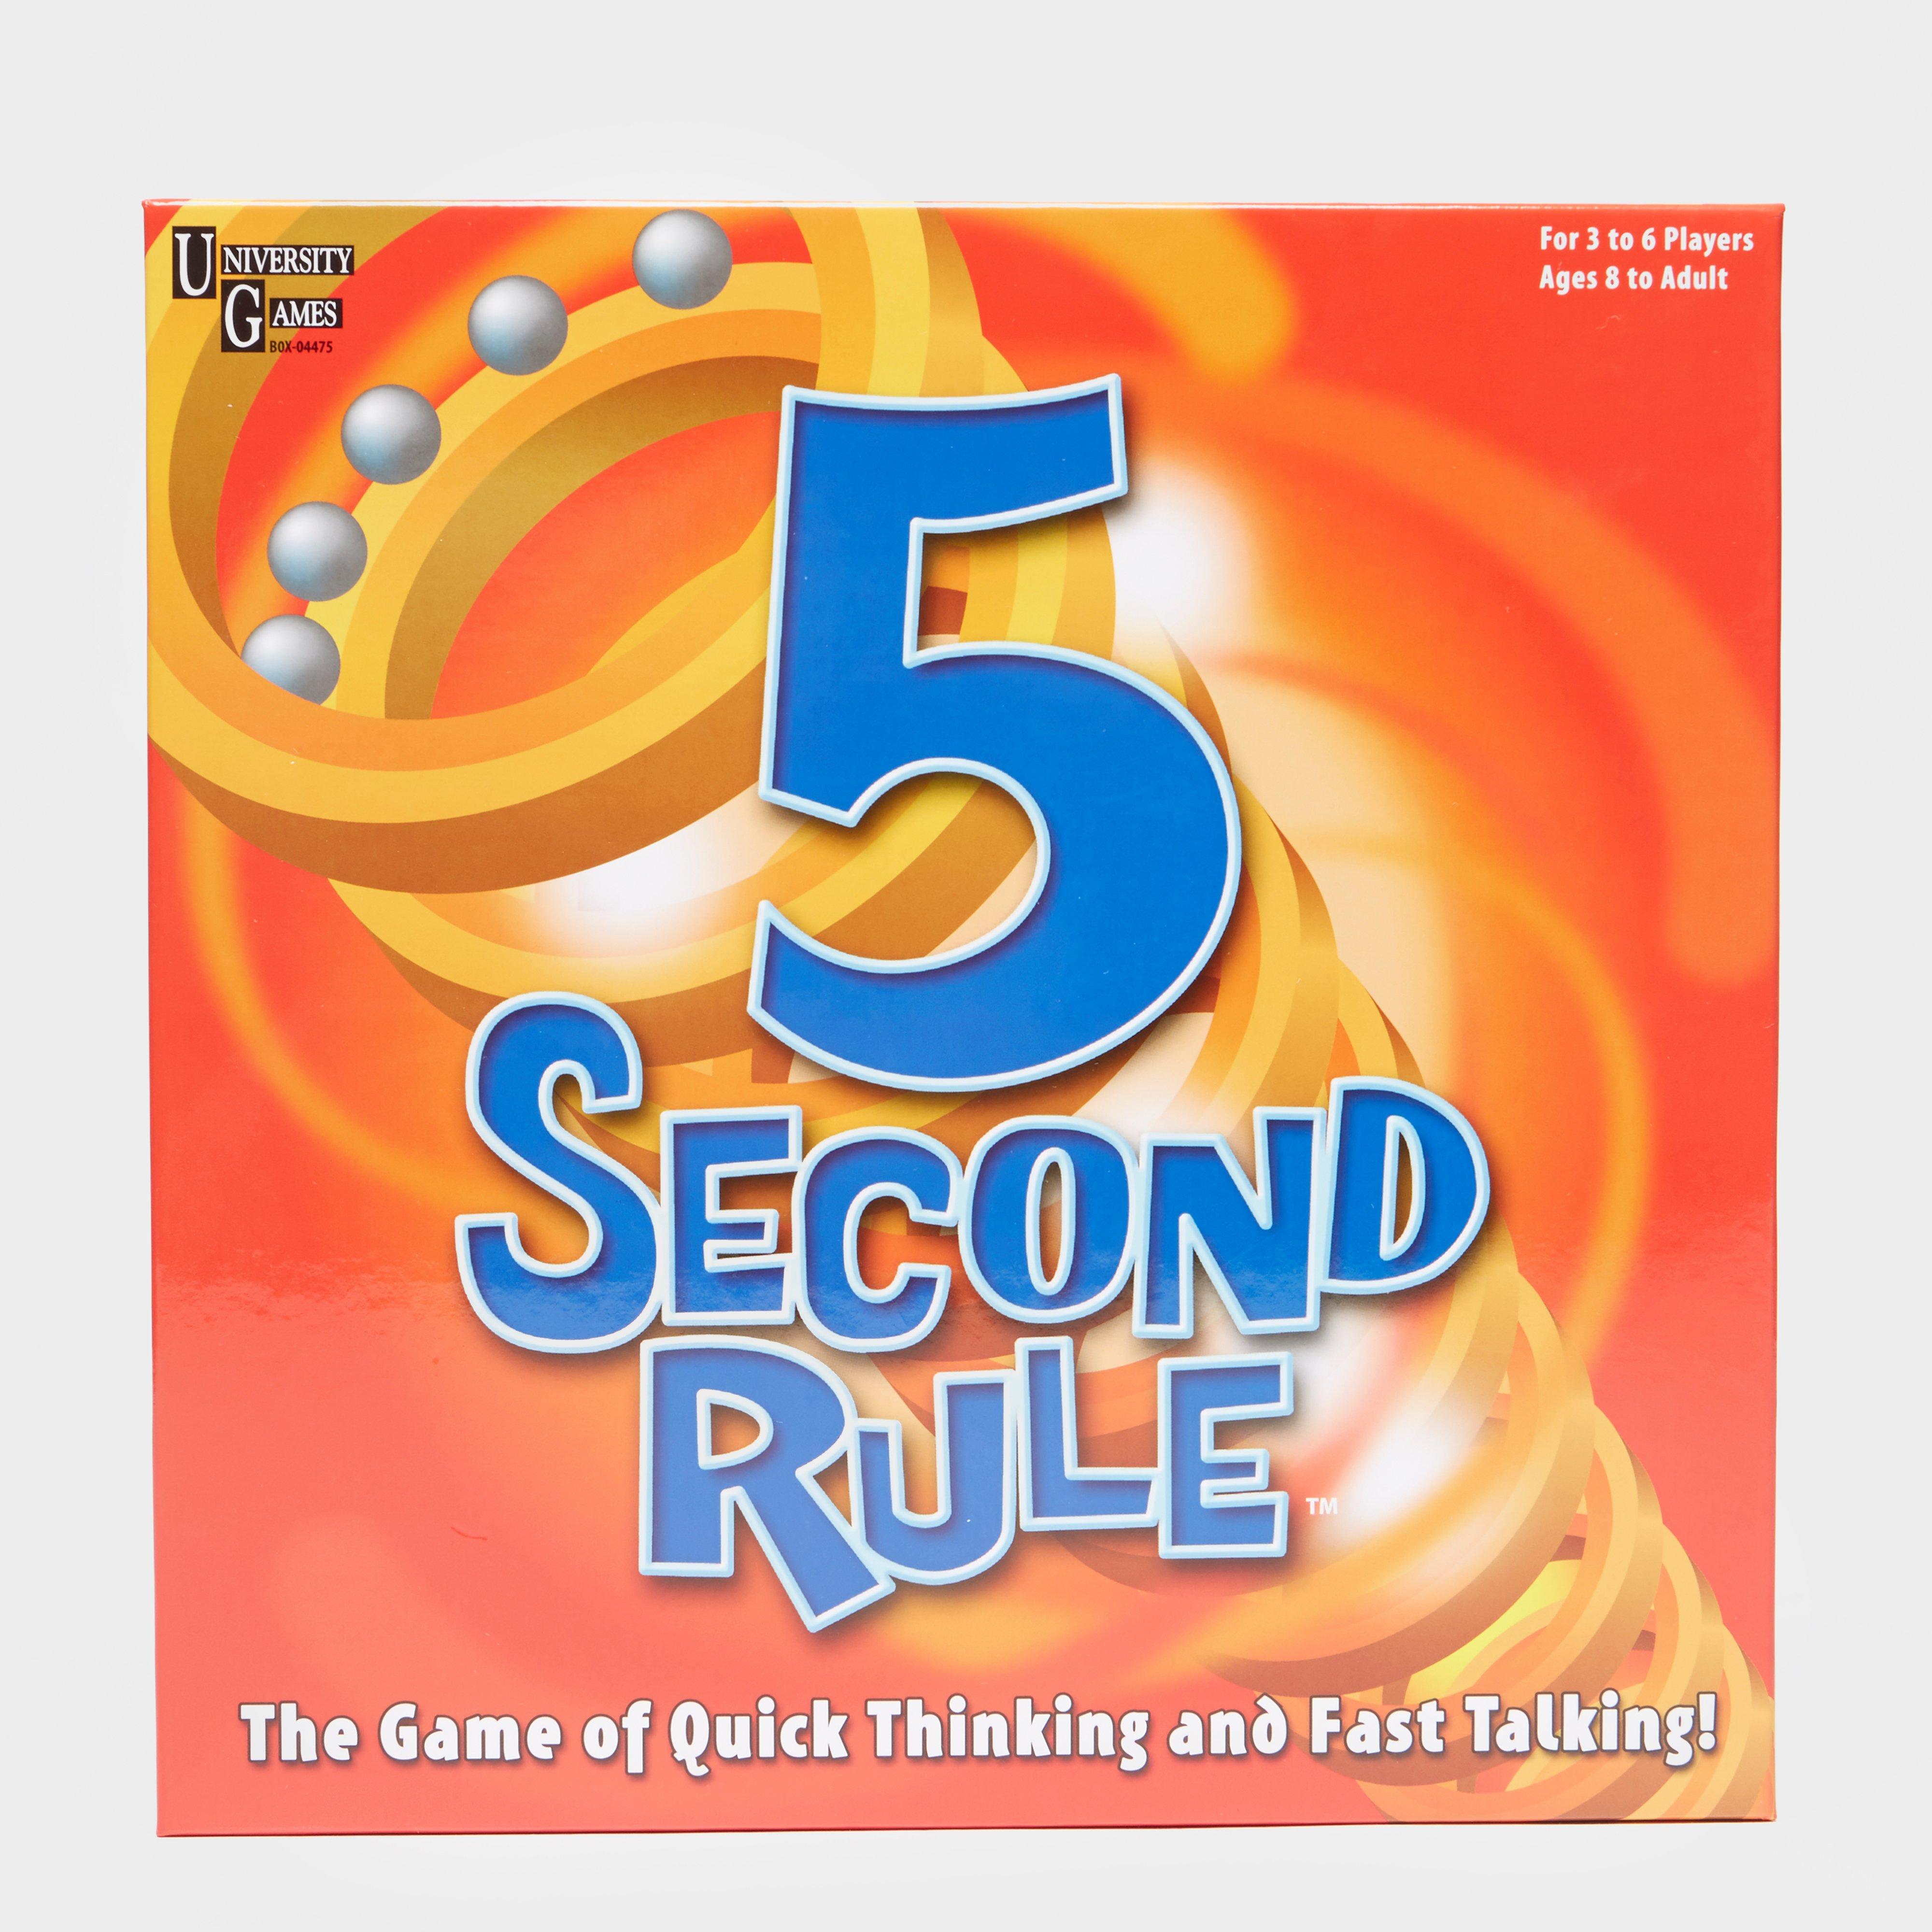 Second rule. Игра пятерки. 5 Second Rule. Карточки для игры 5 second Rule. 5 Second Rule game.